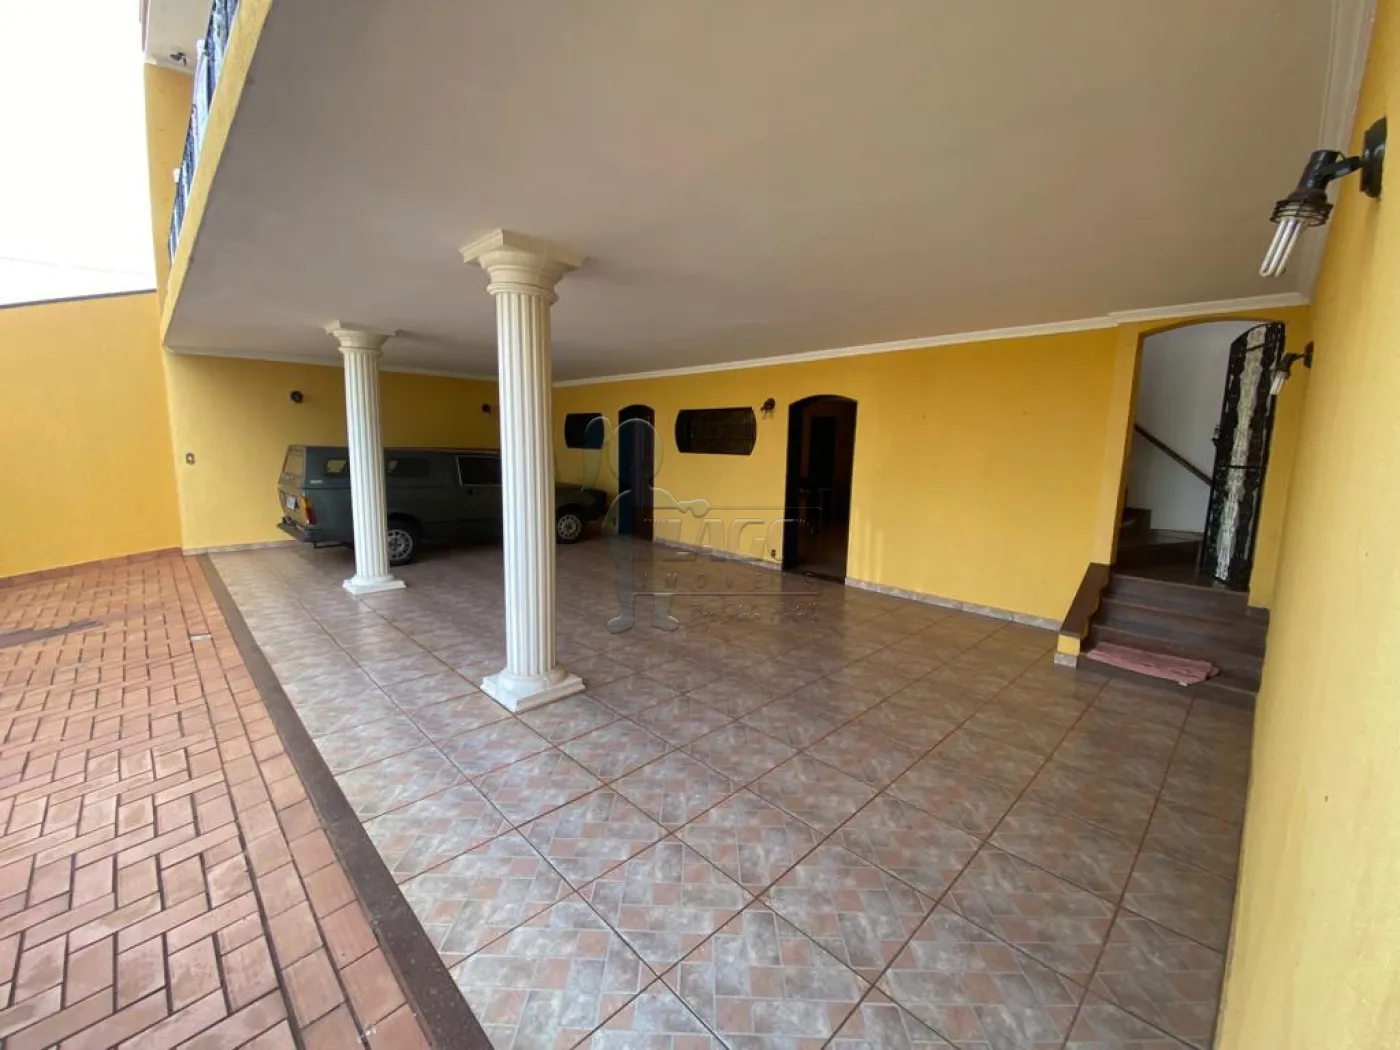 Comprar Casas / Padrão em Ribeirão Preto R$ 550.000,00 - Foto 29